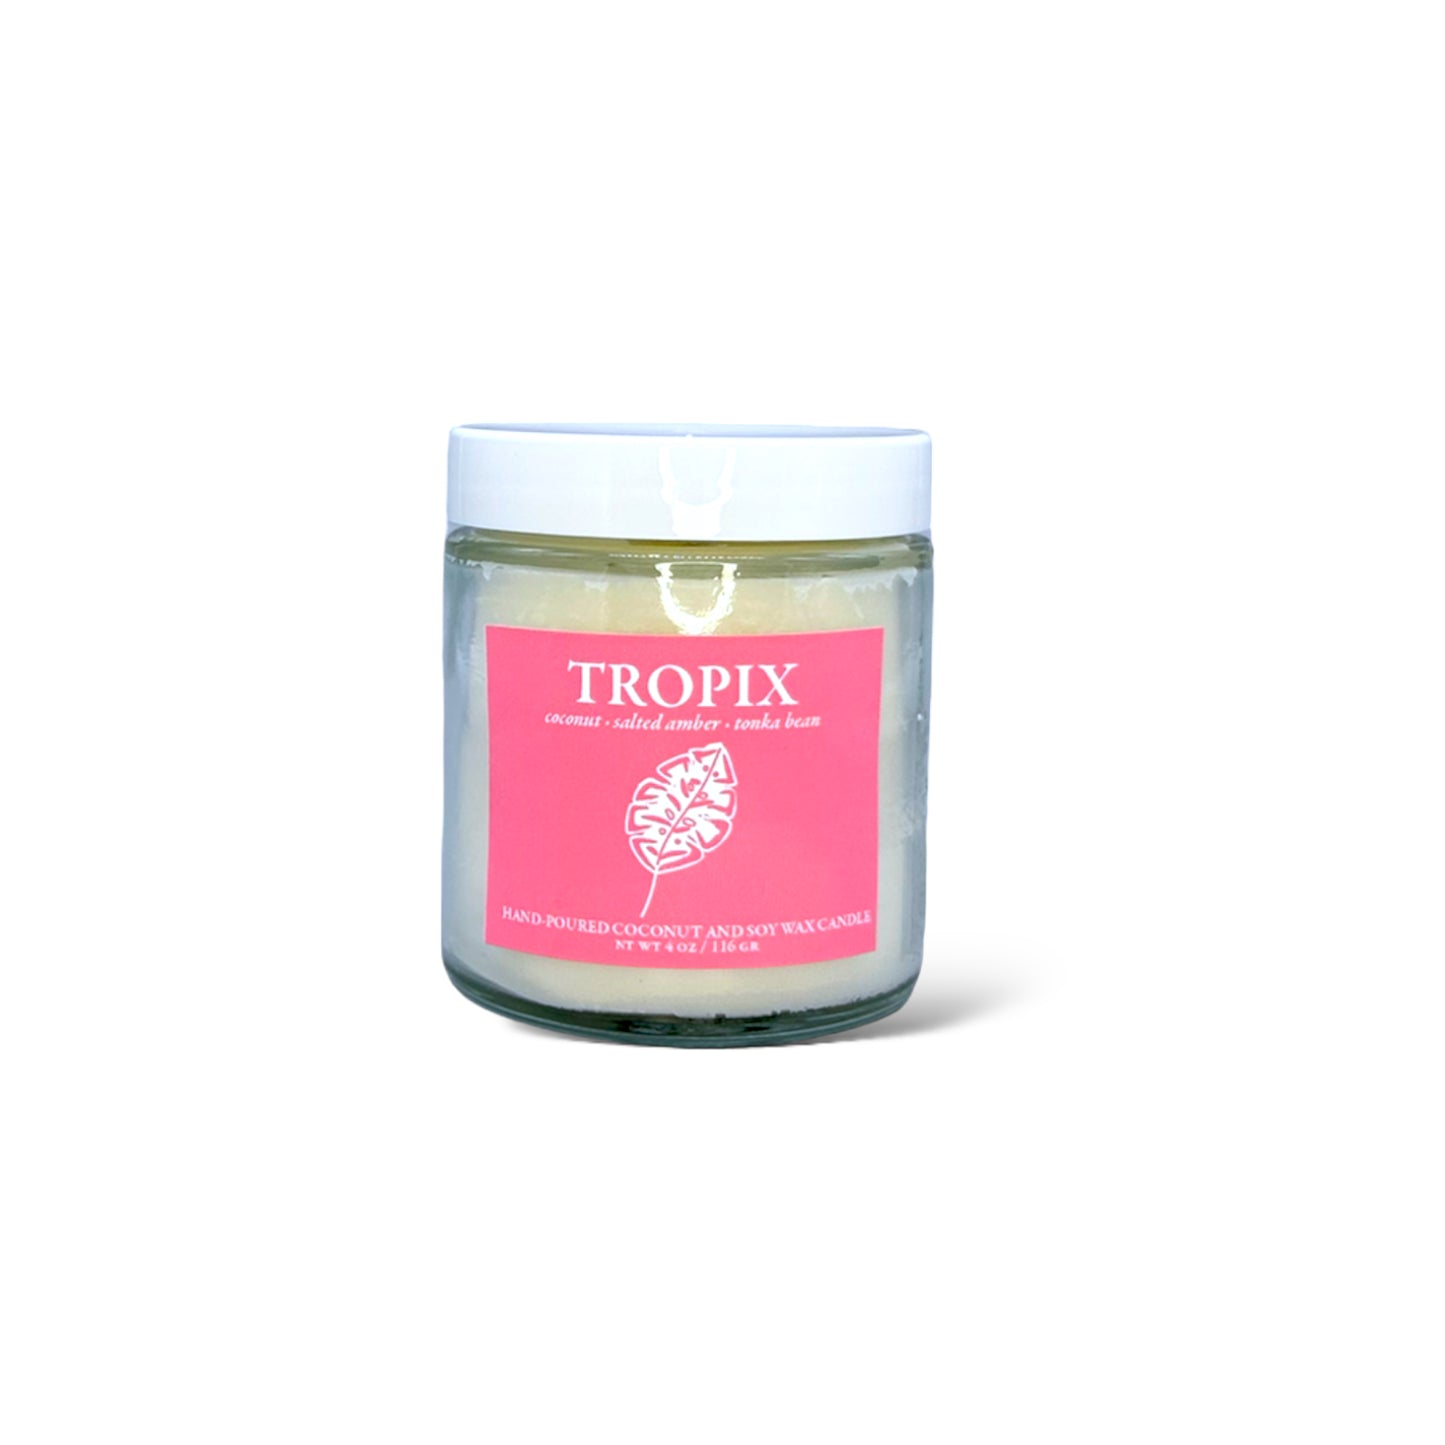 TROPIX Candles